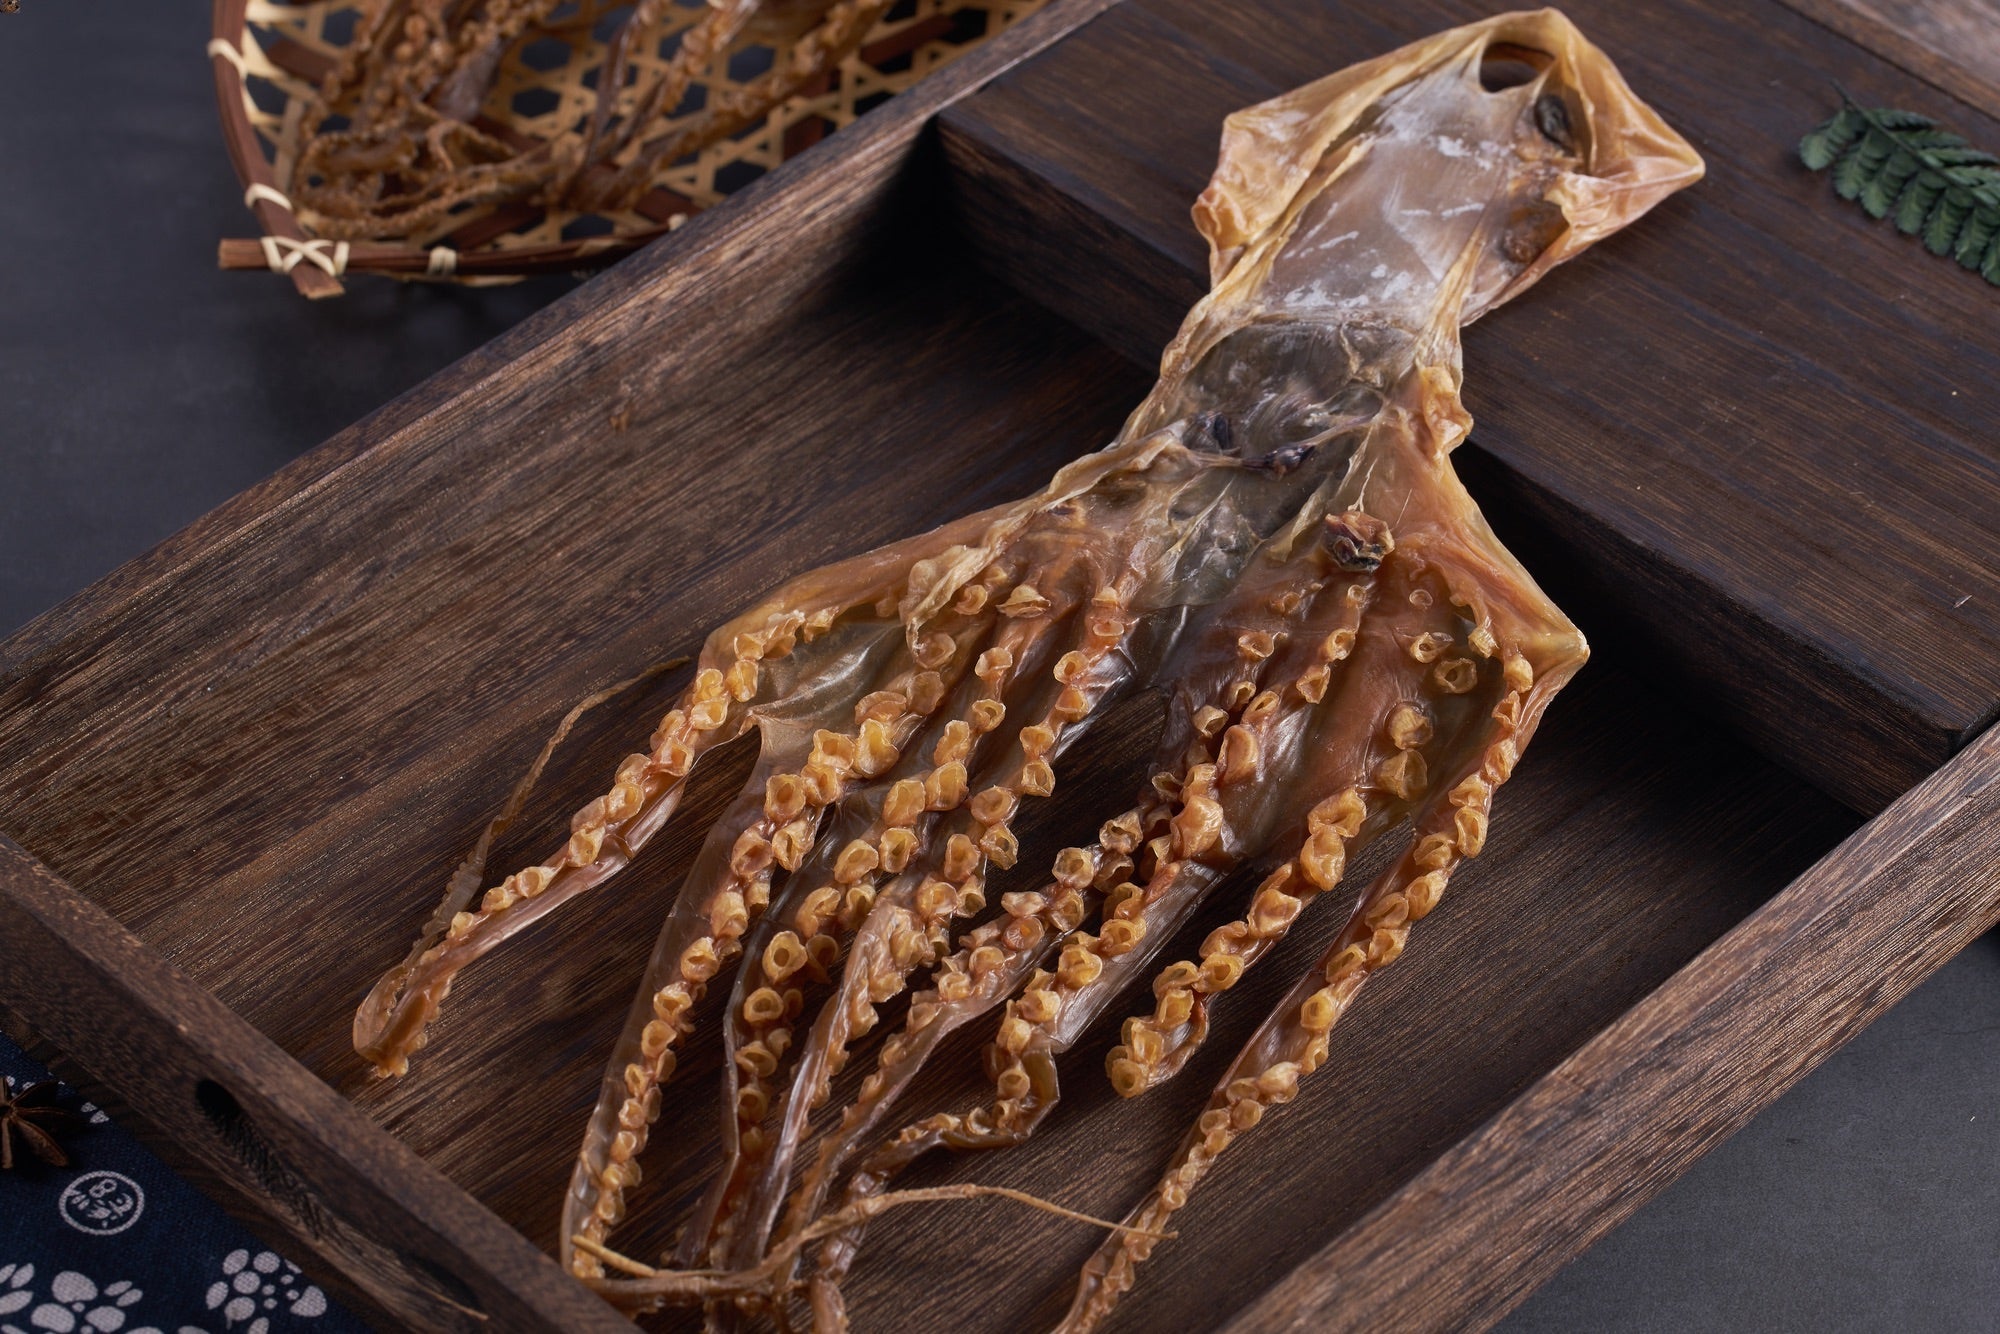 章魚 - On Hing Dry Seafood